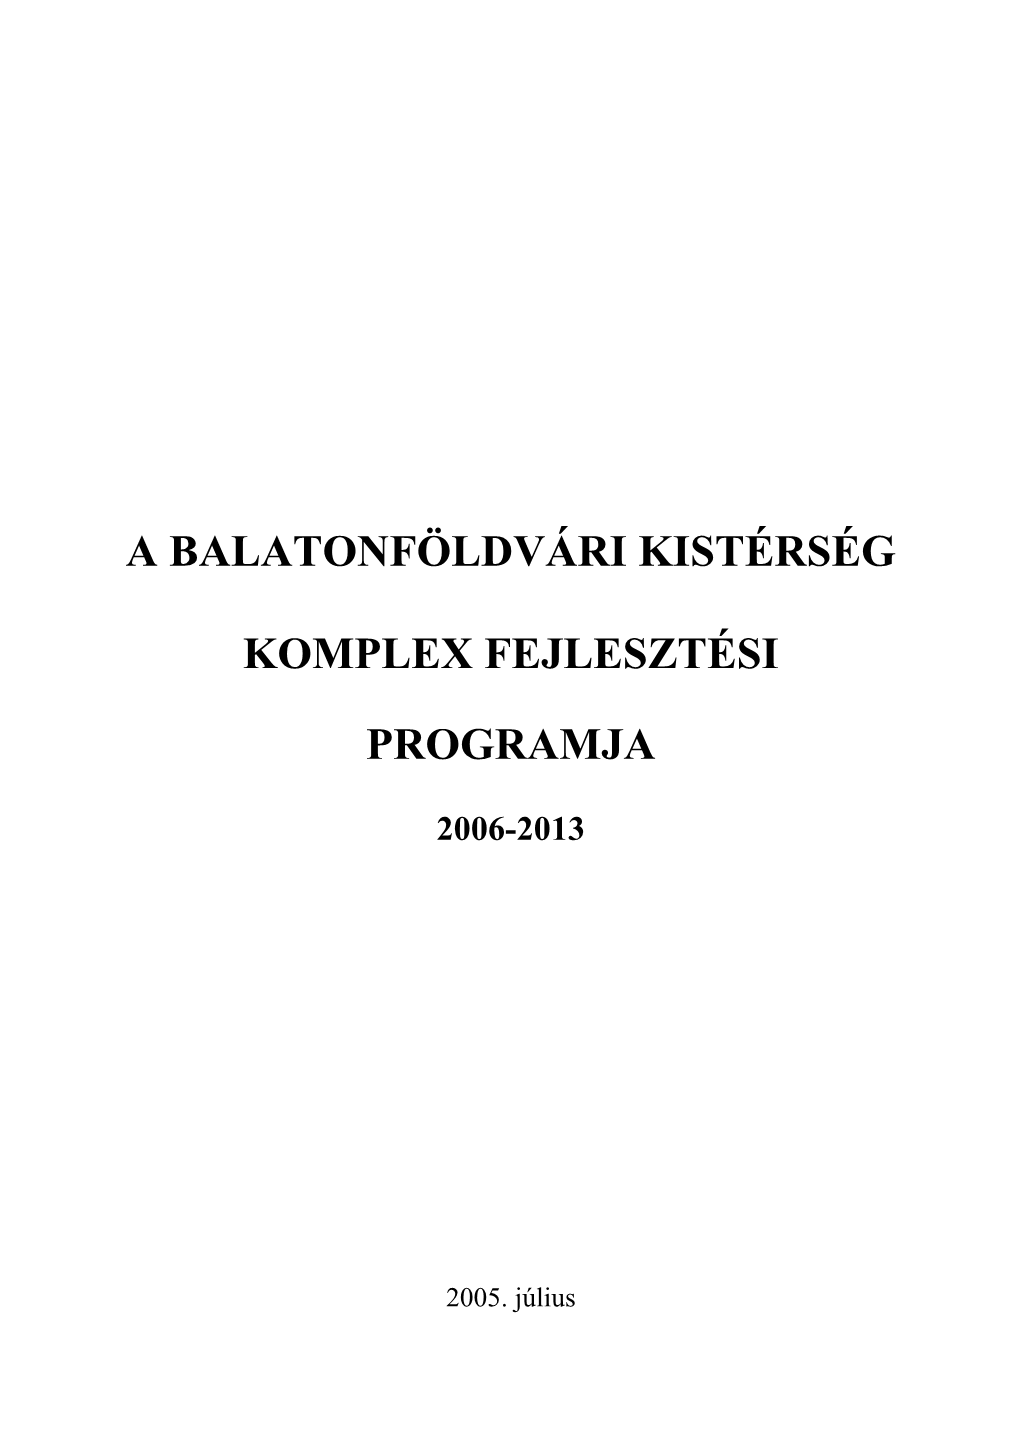 A Balatonföldvári Kistérség Komplex Fejlesztési Programjának Elkészítéséhez